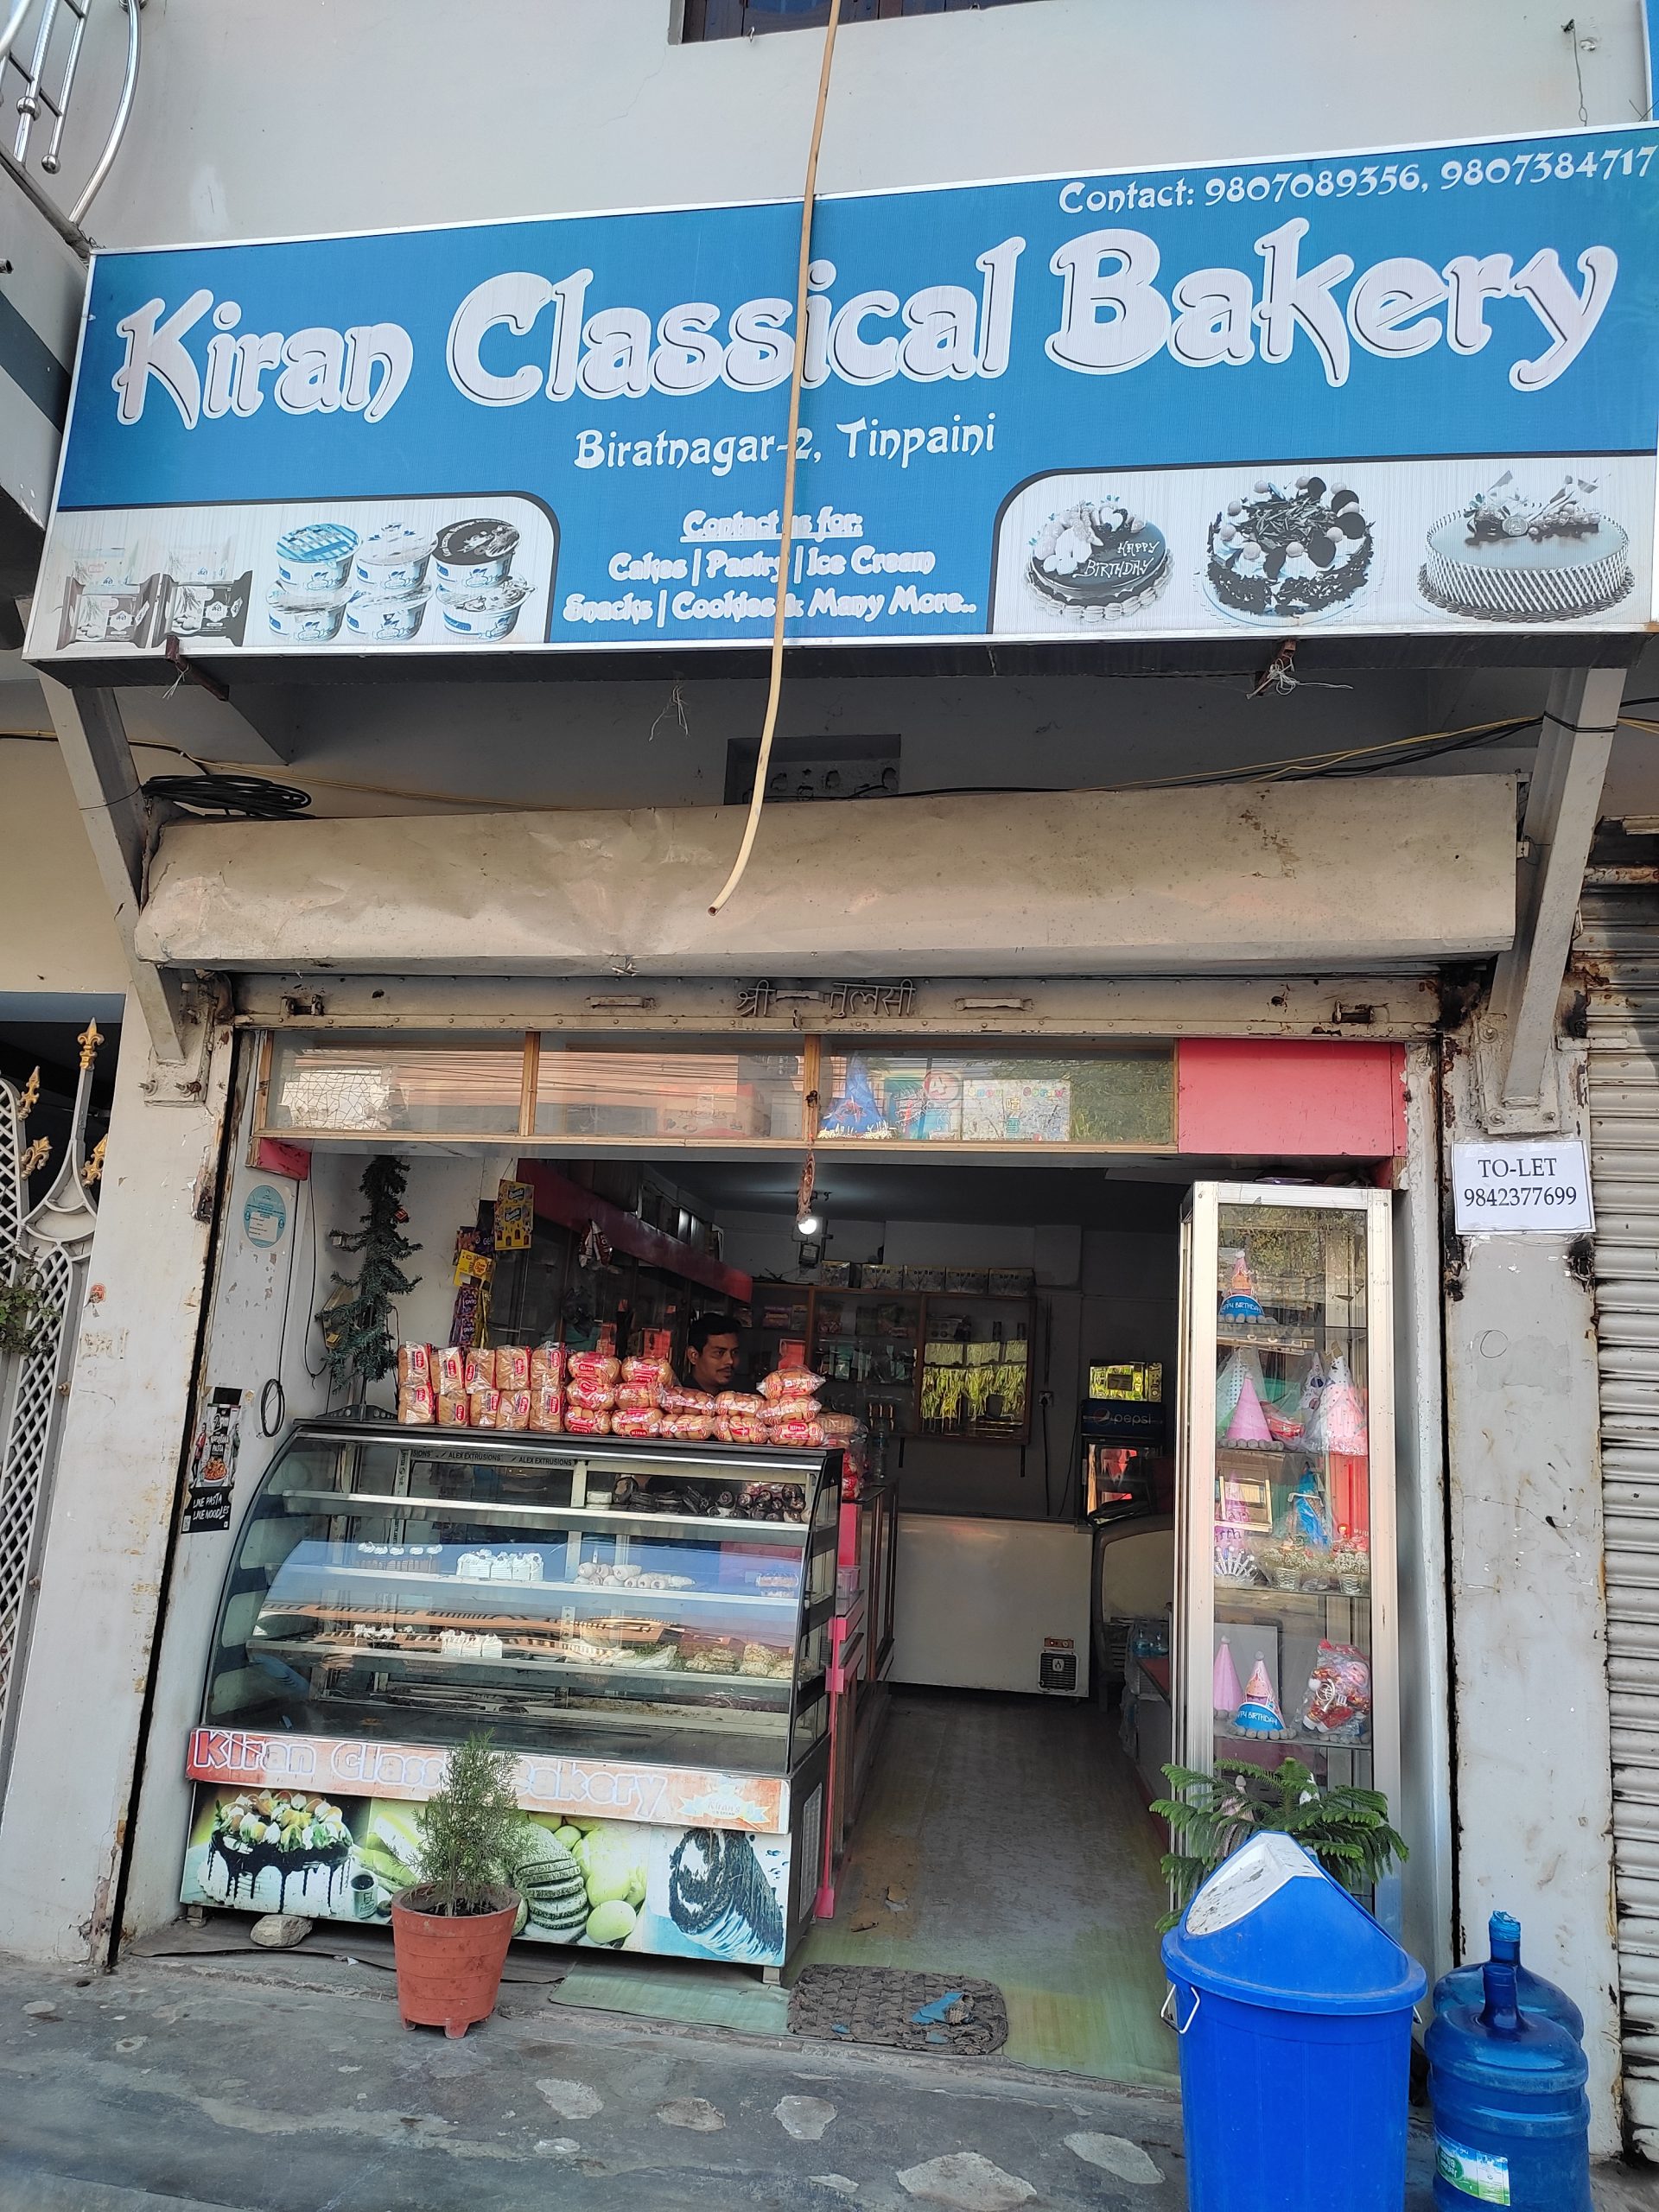 Kiran Classical Bakery